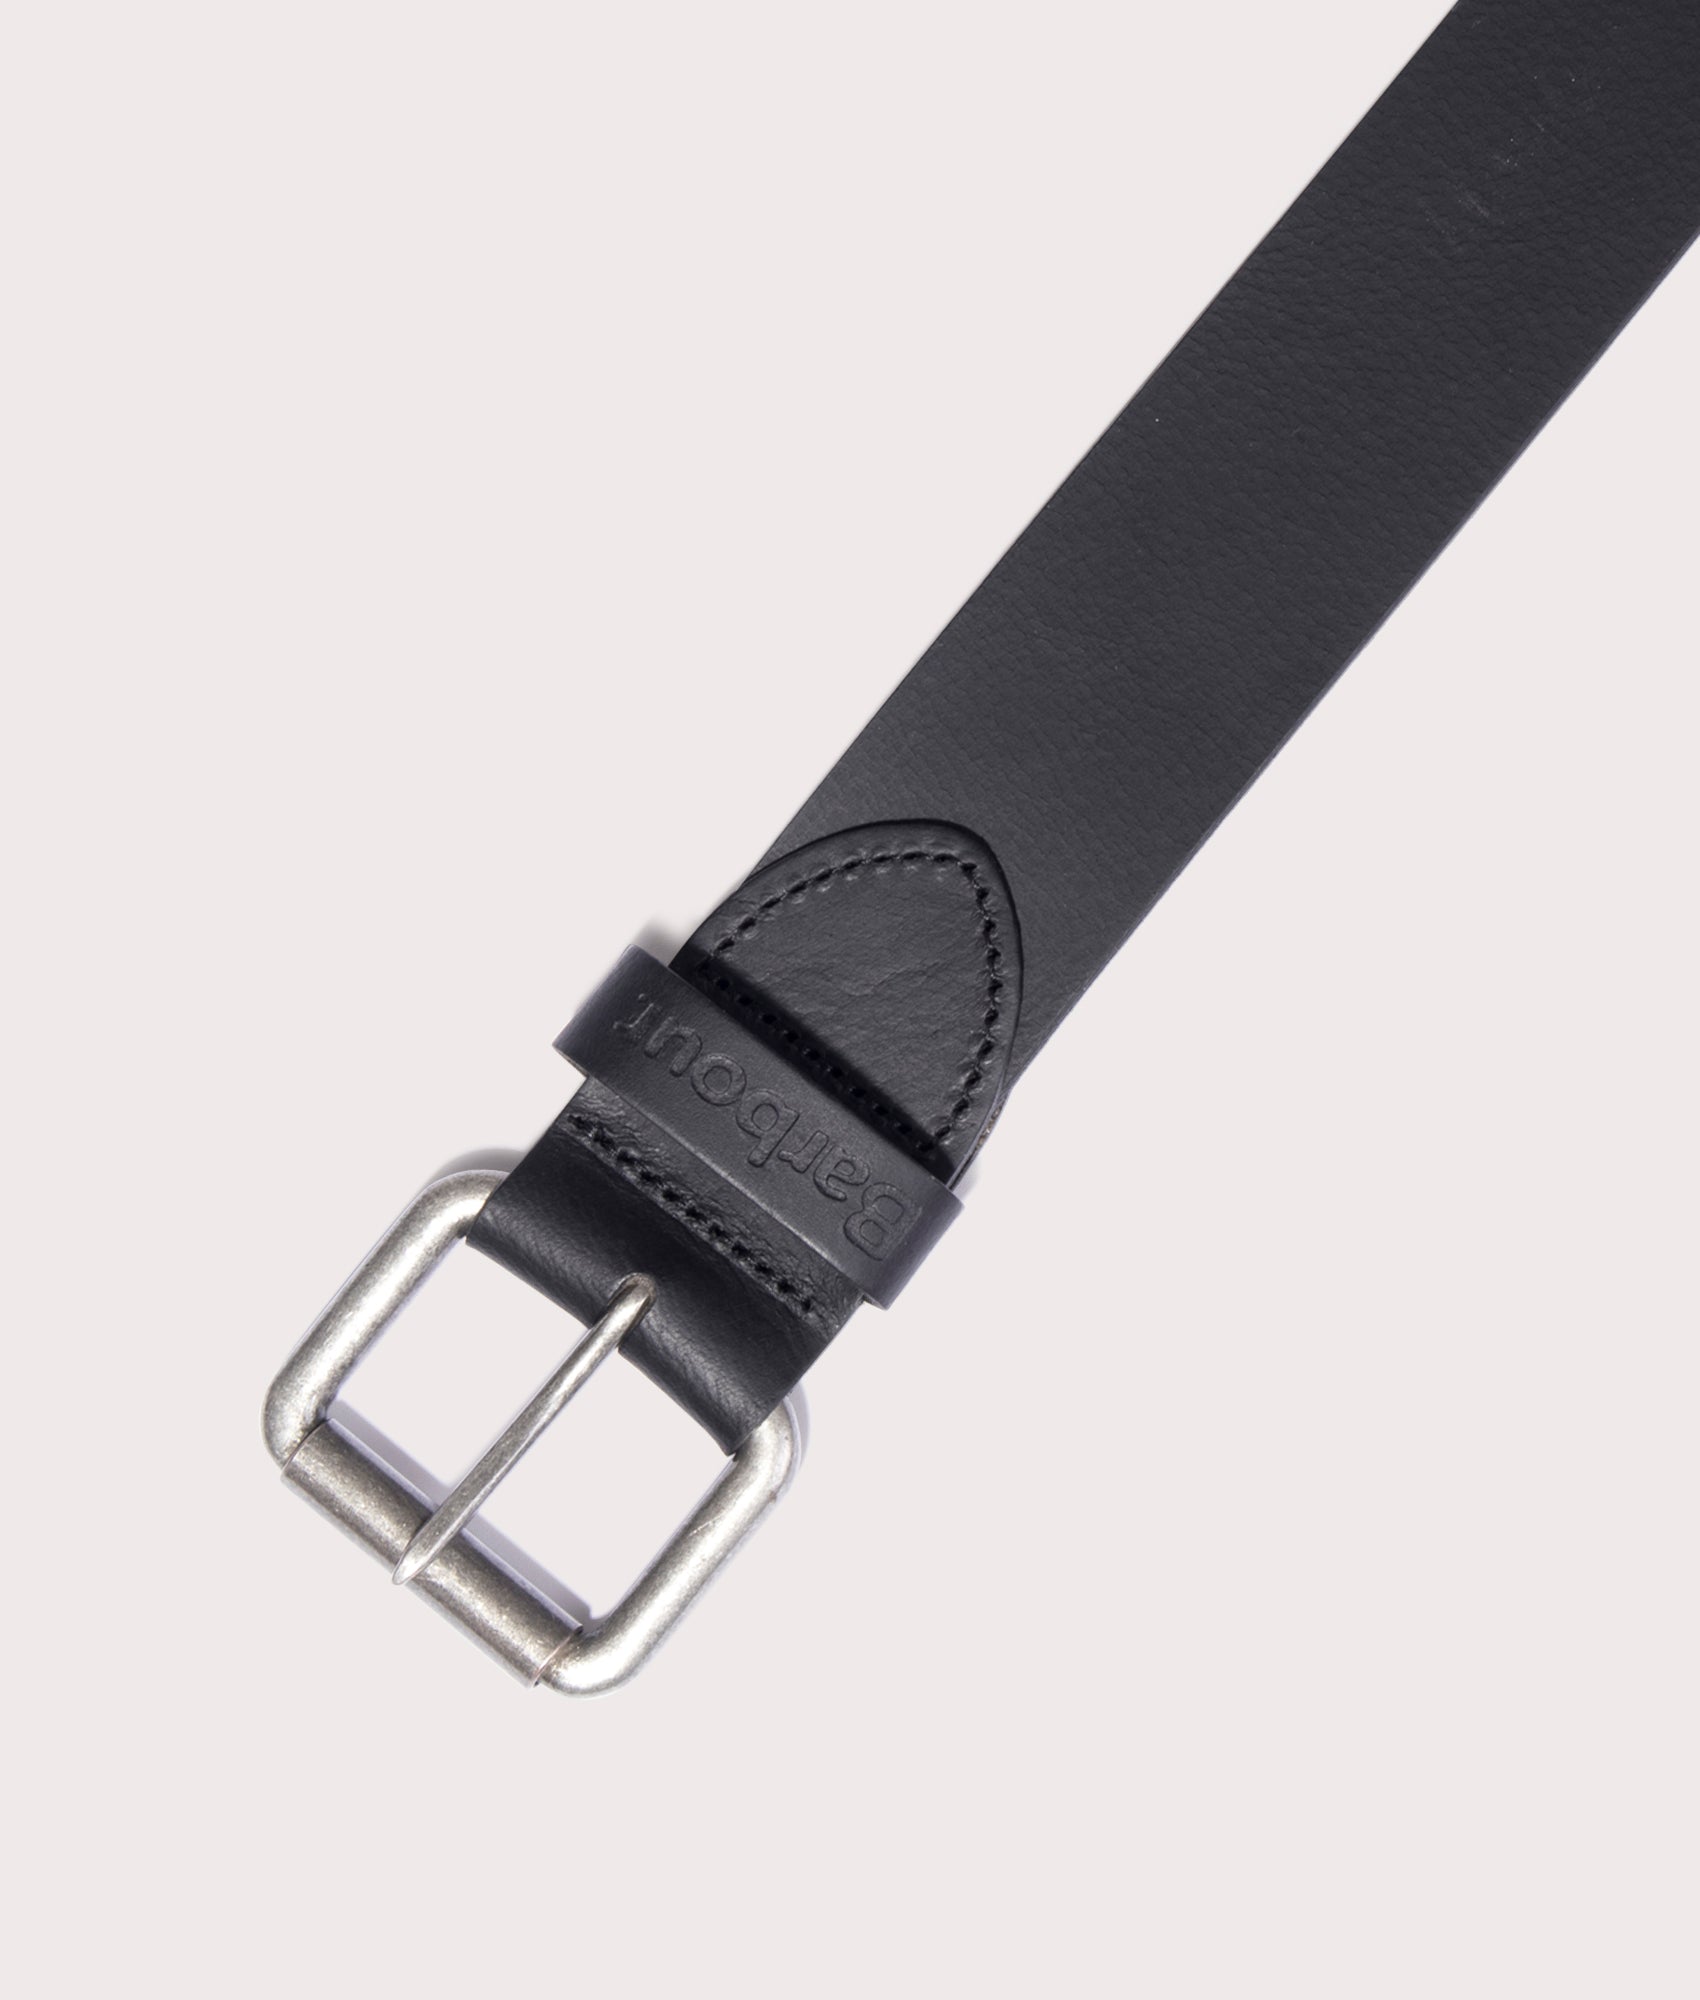 Barbour Lifestyle Mens Allanton Matt Leather Belt - Colour: BK31 Black - Size: Medium